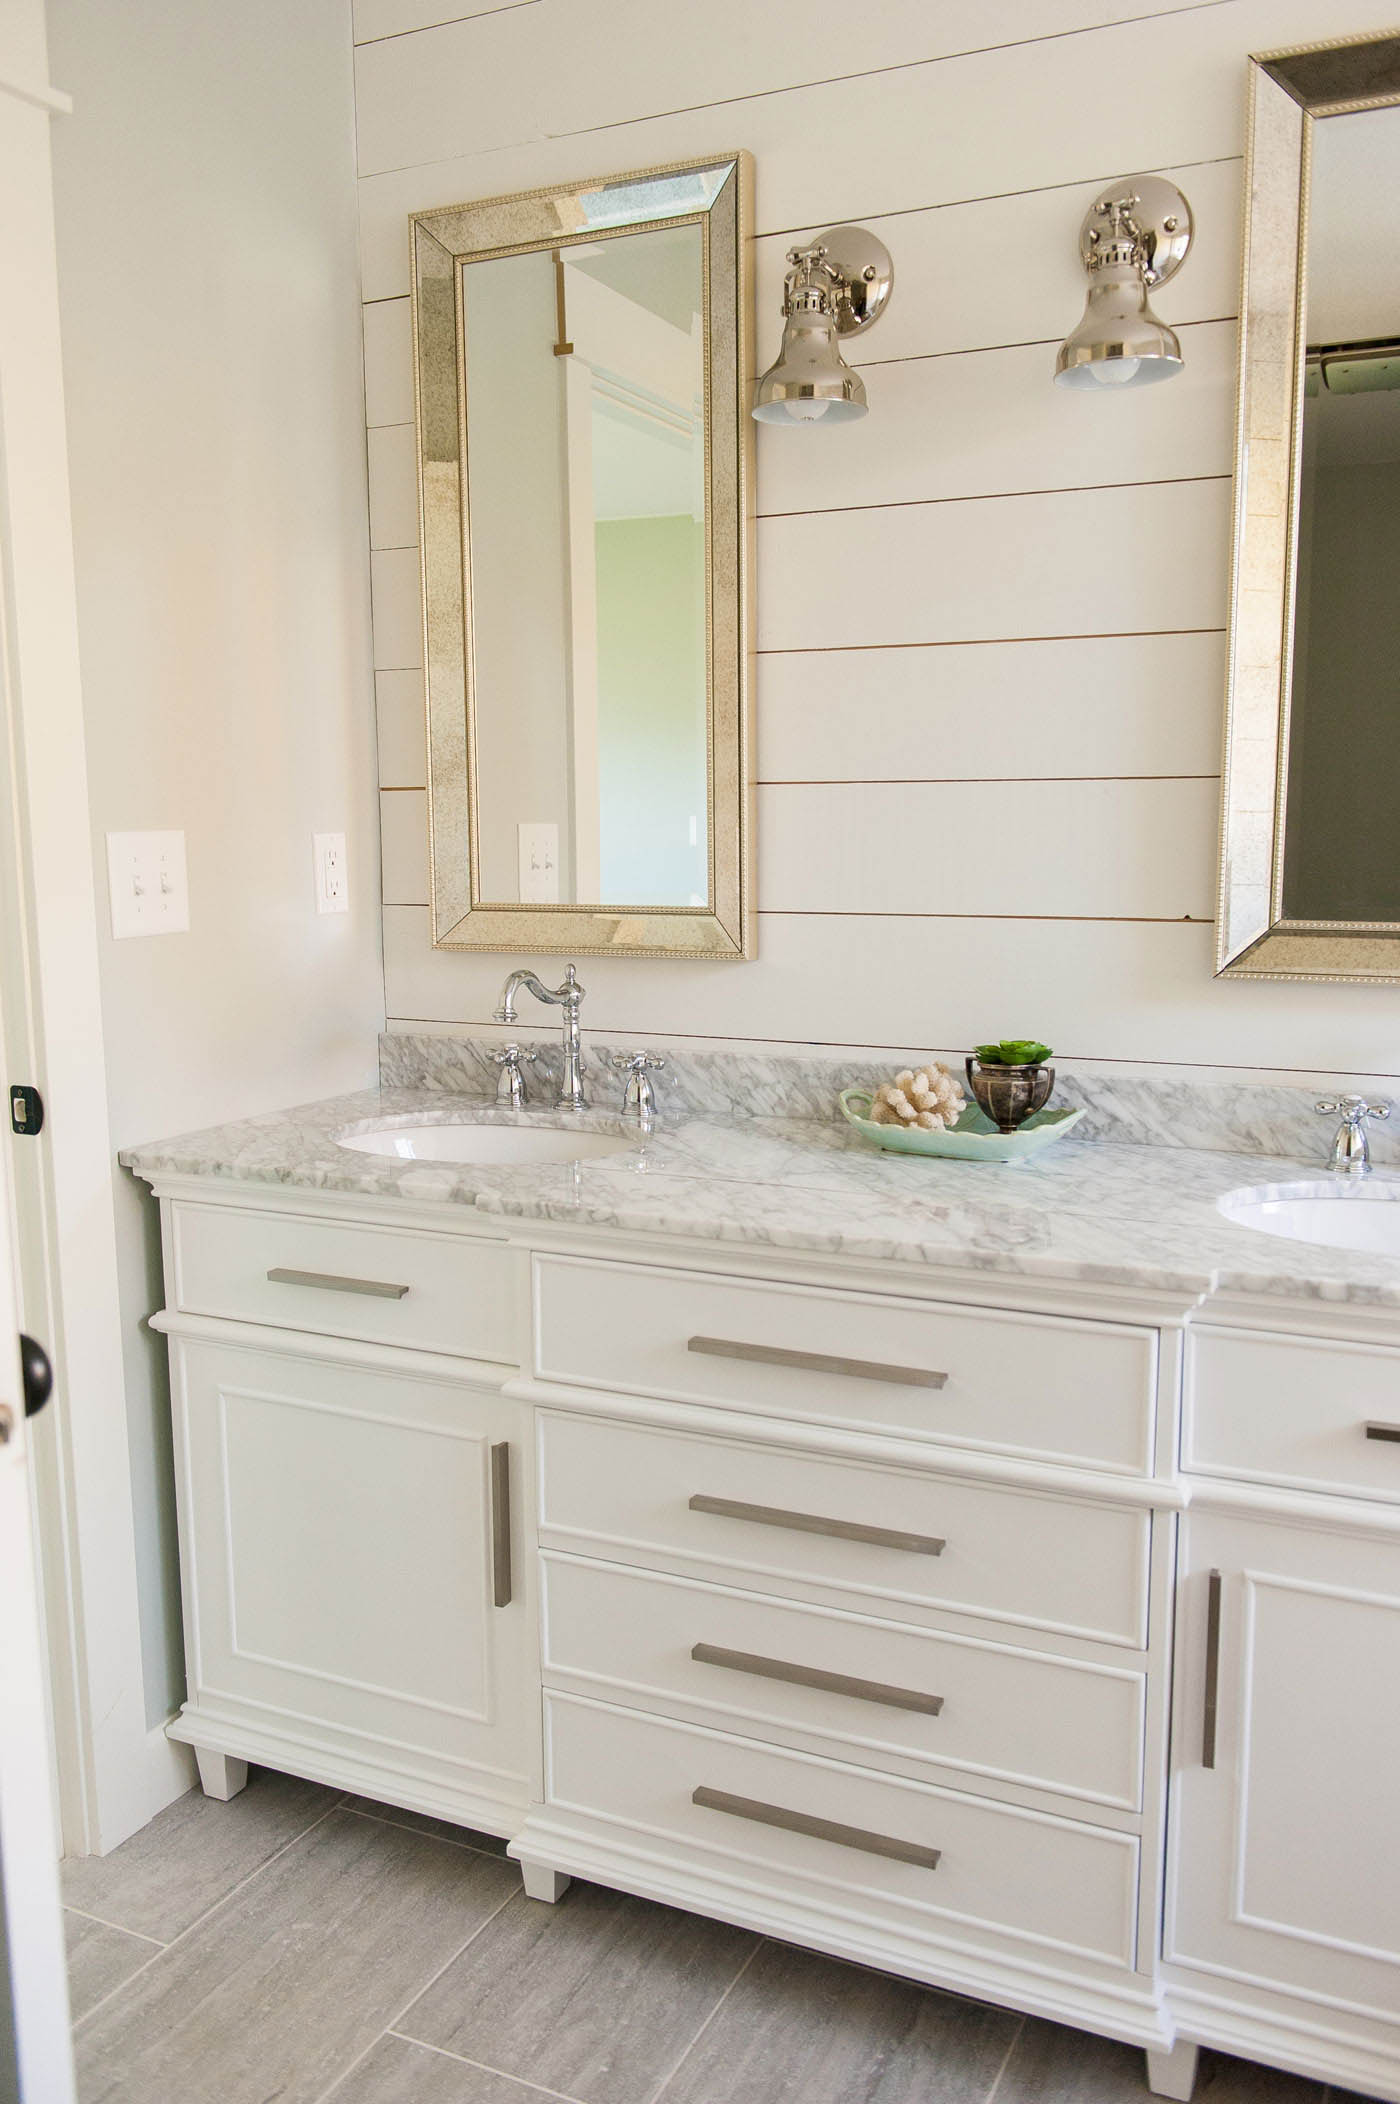 https://www.theharperhouse.com/wp-content/uploads/2018/09/bathroom-vanity-ideas-double-sink-vanities-02.jpg